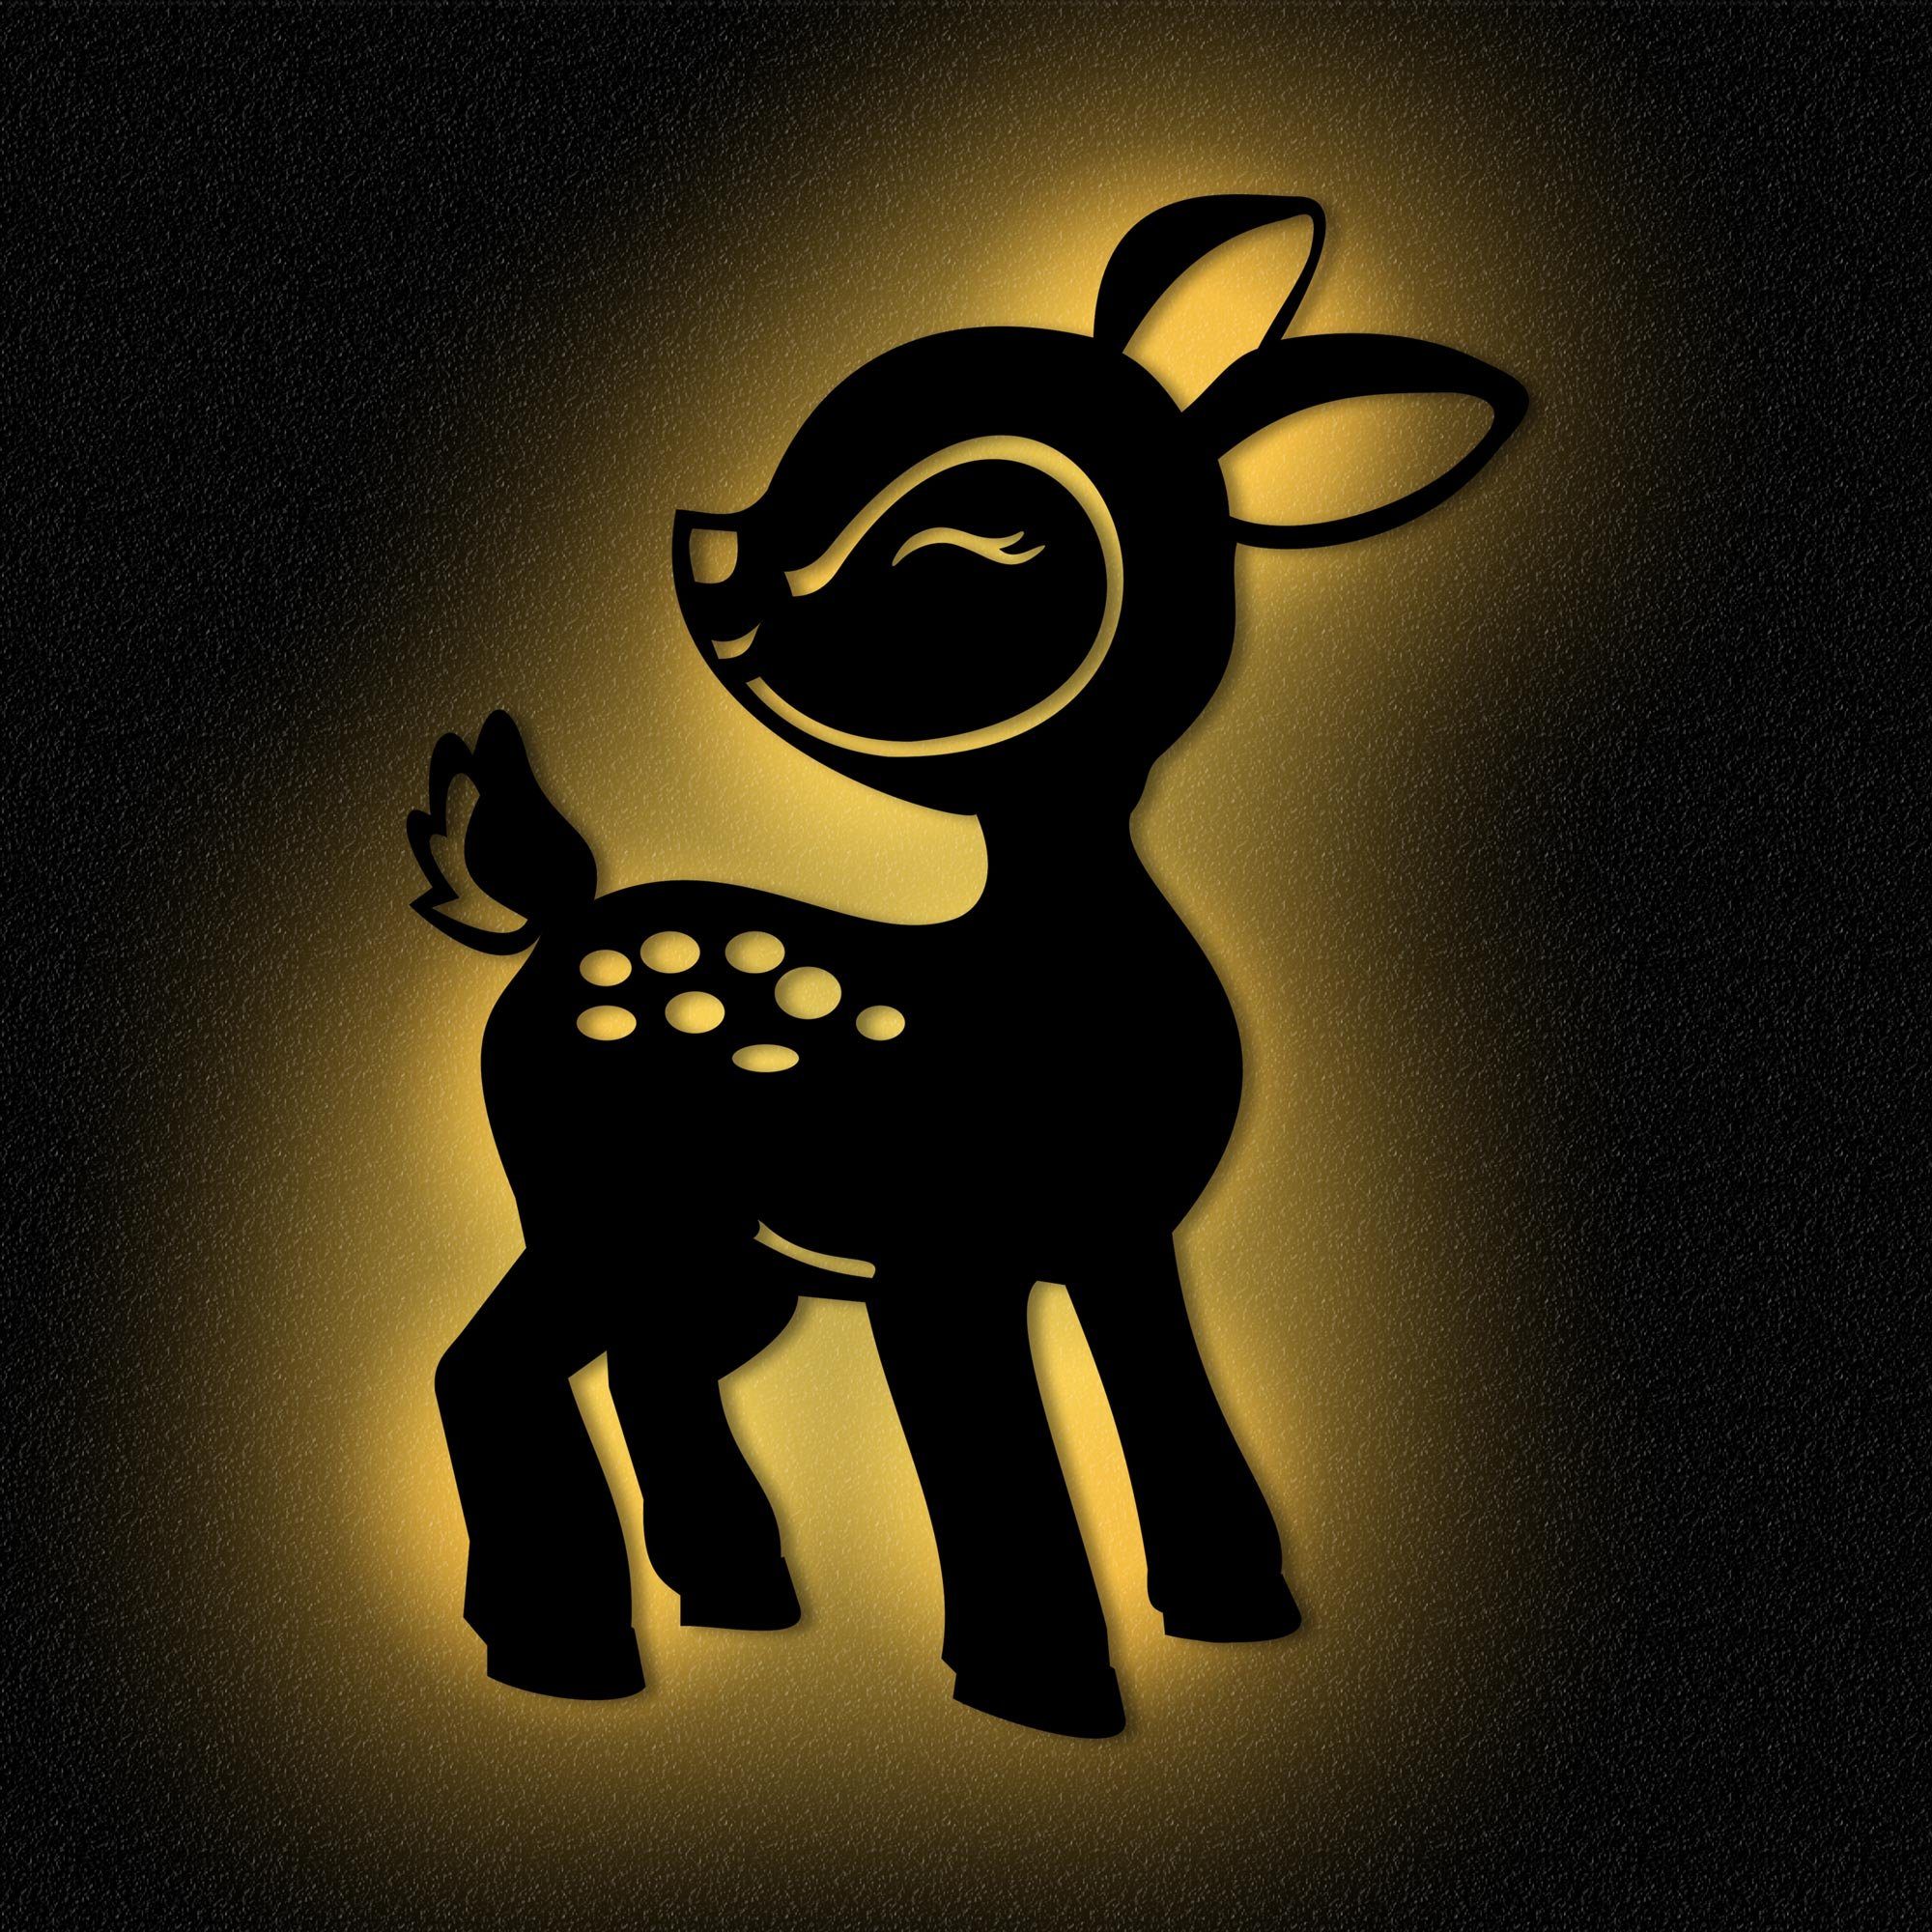 Namofactur LED Nachtlicht »Reh - Schlaflicht mit Tier-Motiv für Kleinkinder  - Wand Deko Lampe«, LED fest integriert, Warmweiß, Wanddekoobjekt  Kinderzimmer Leuchte batteriebetrieben